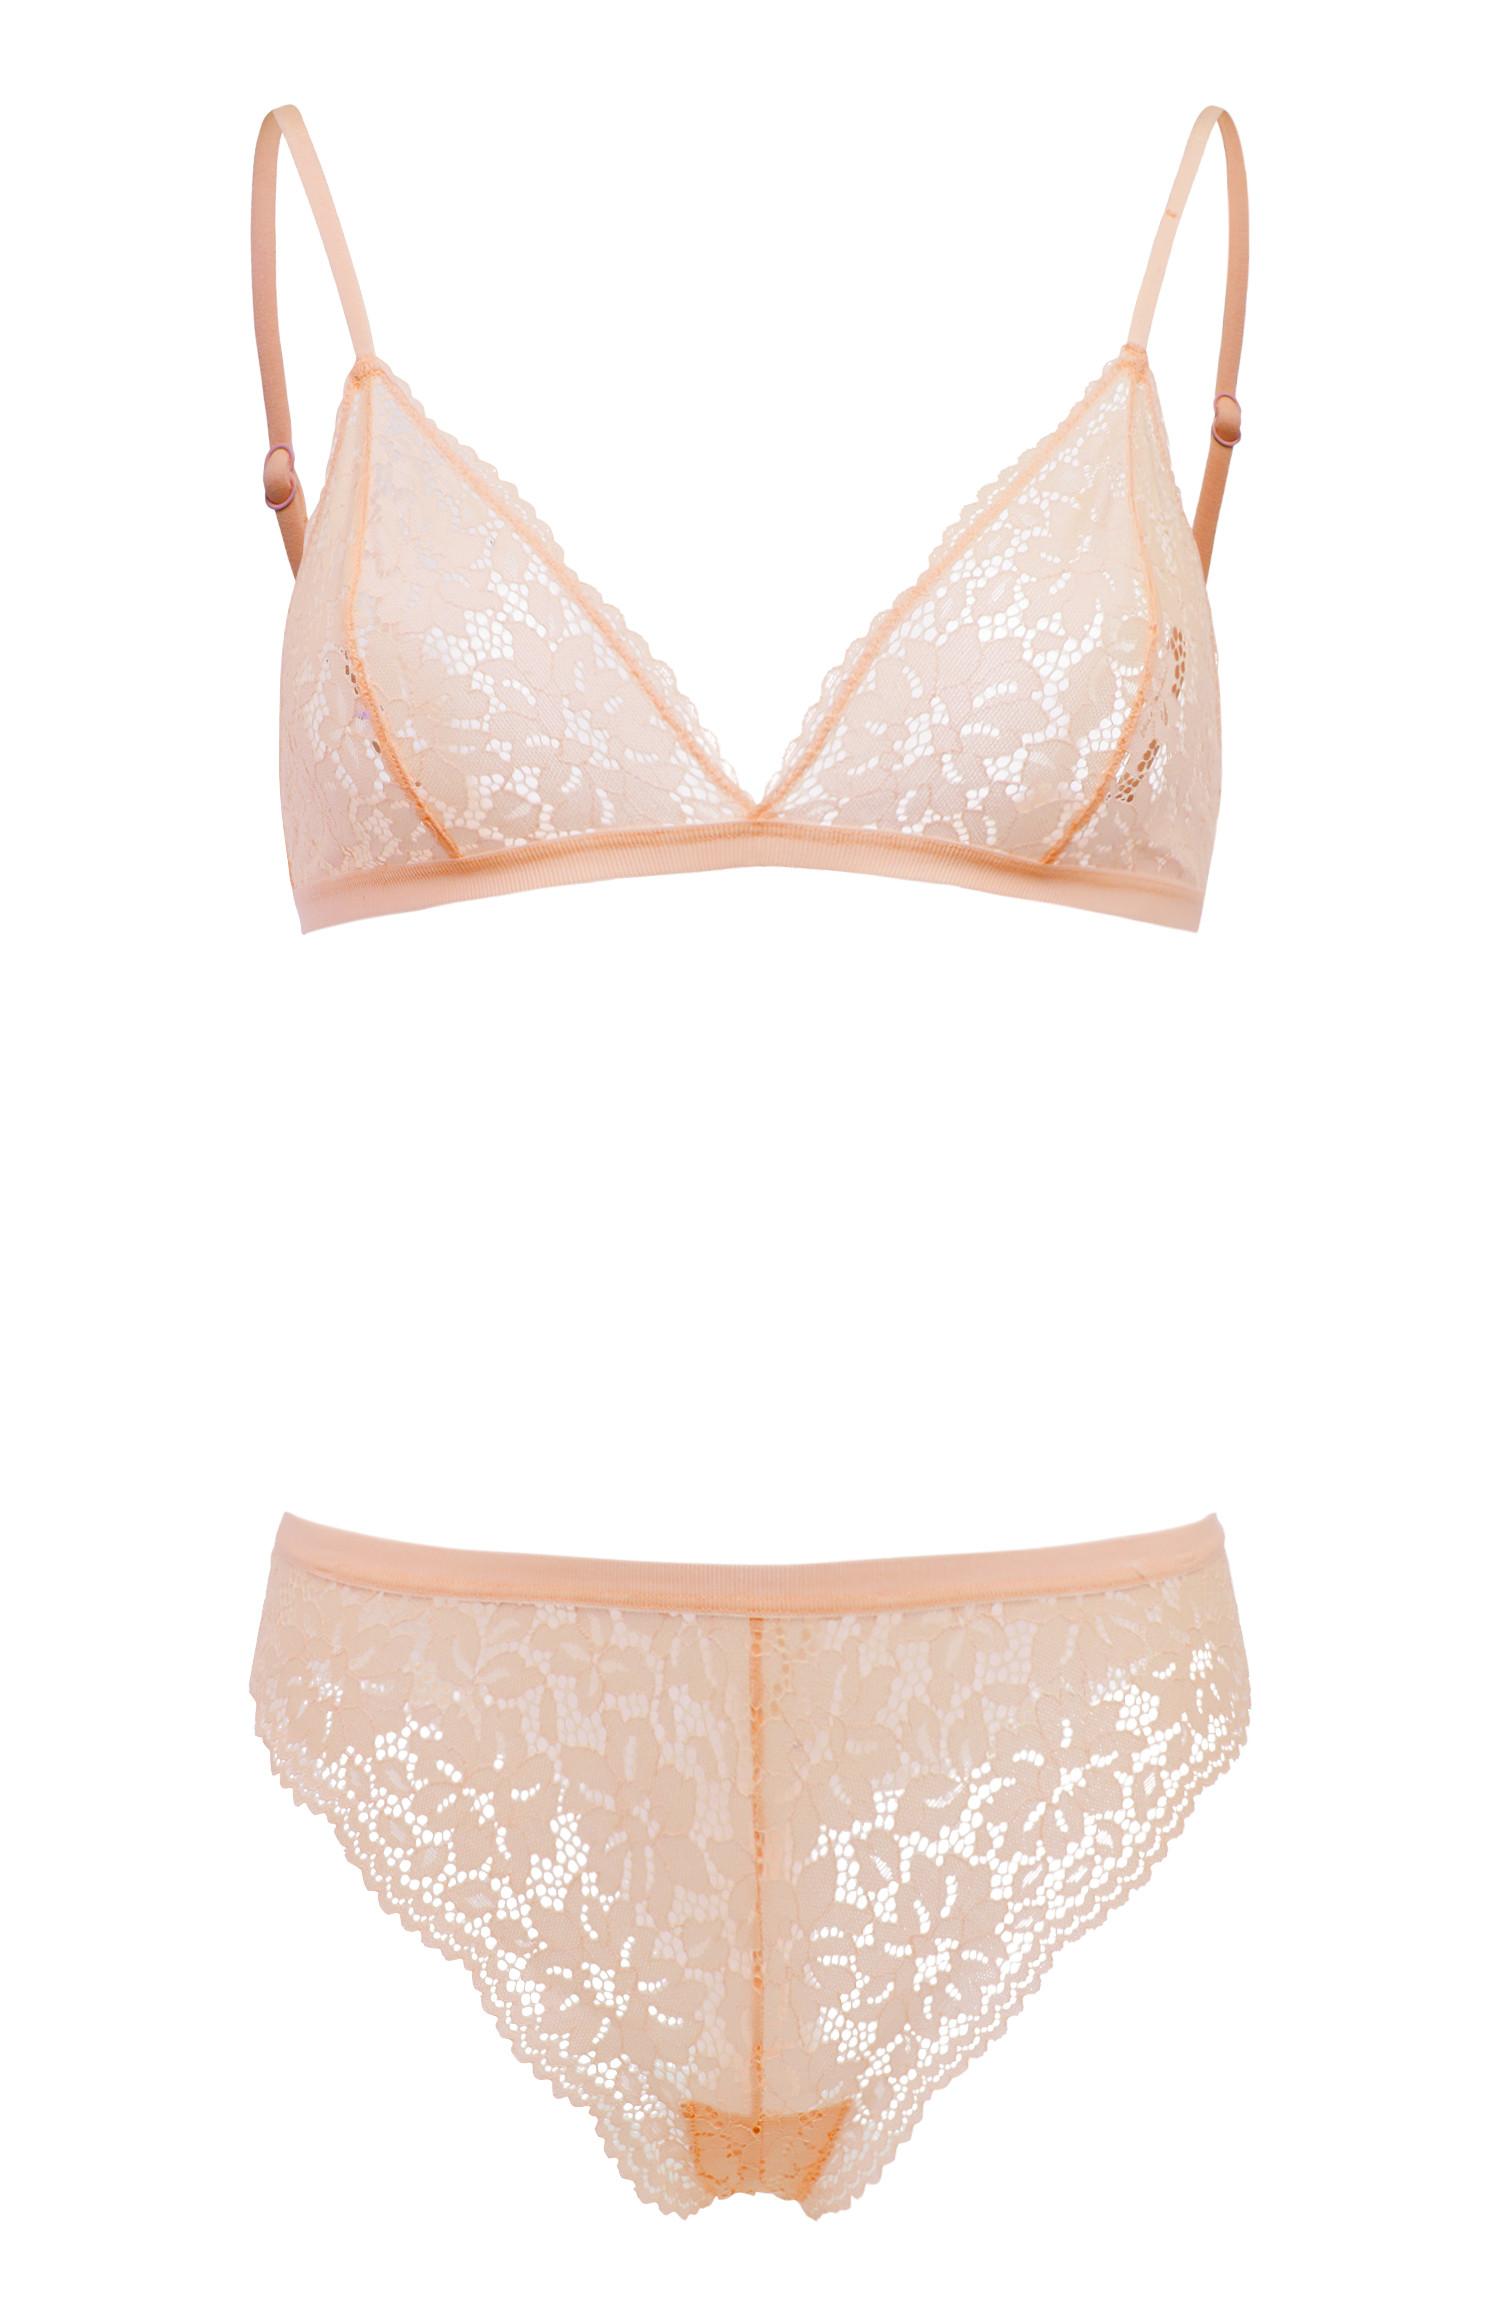 Blush Pink Lace Triangle Lingerie Set | Lingerie & Underwear Sets ...